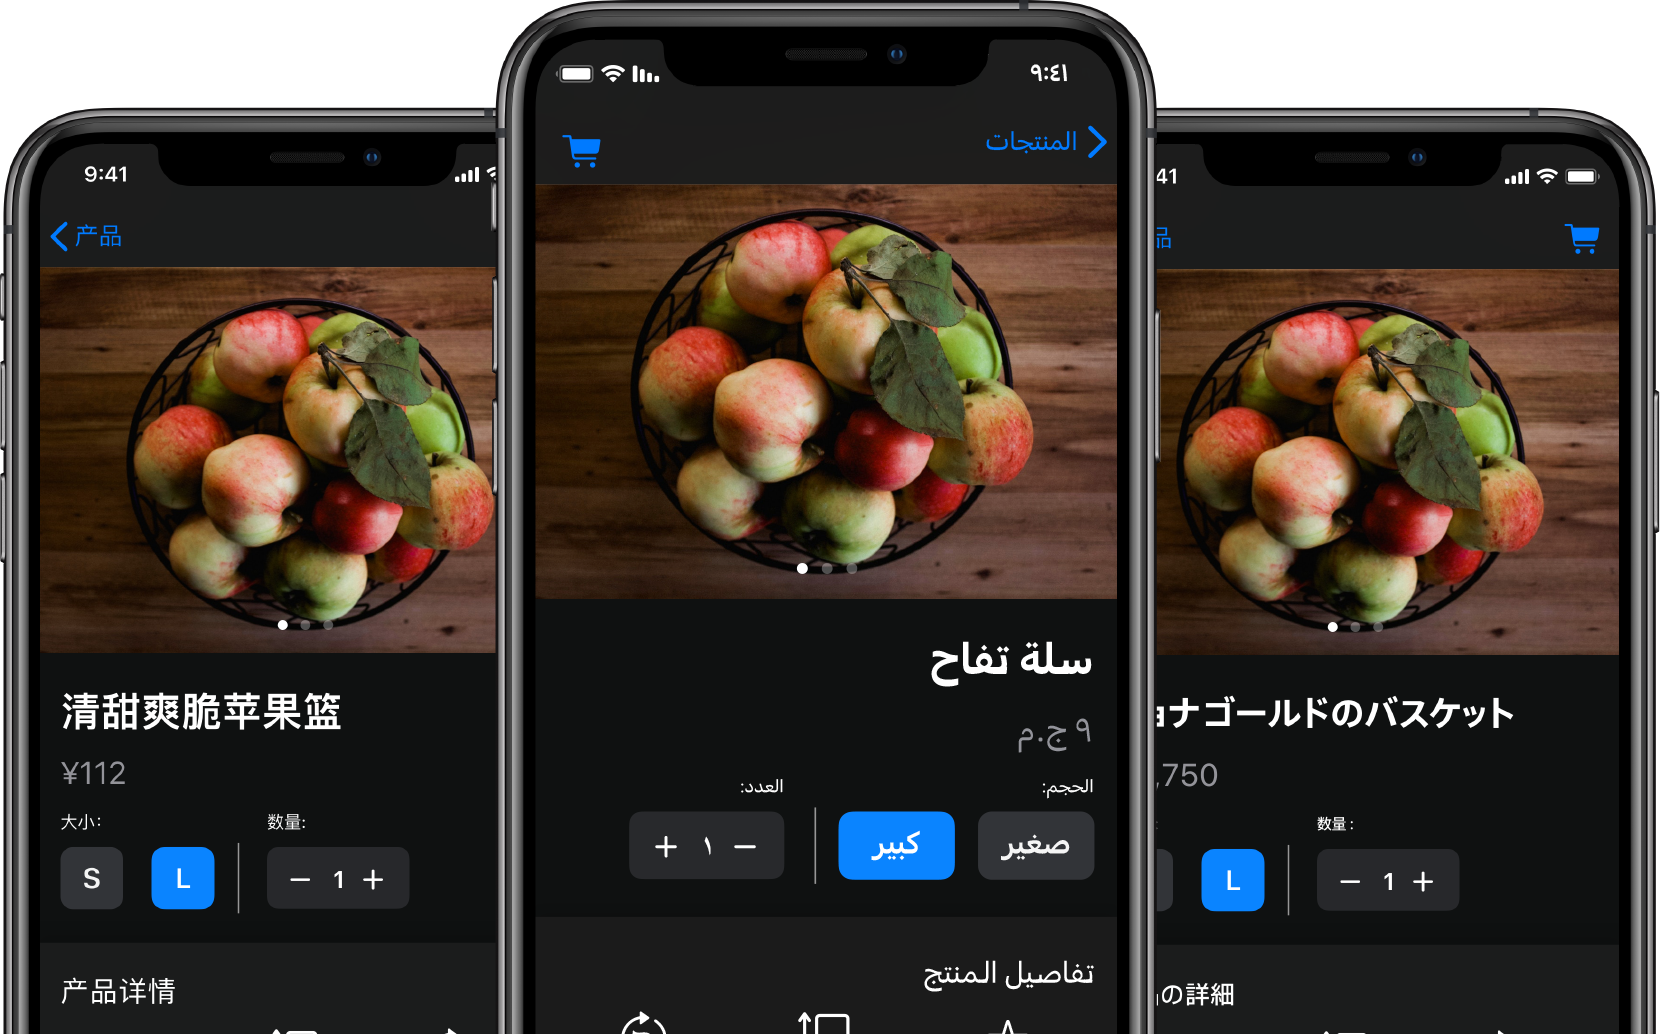 フードデリバリーのAppが開いている3台のiPhone。それぞれのiPhoneのテキストコンテンツが別々の言語に翻訳されている。